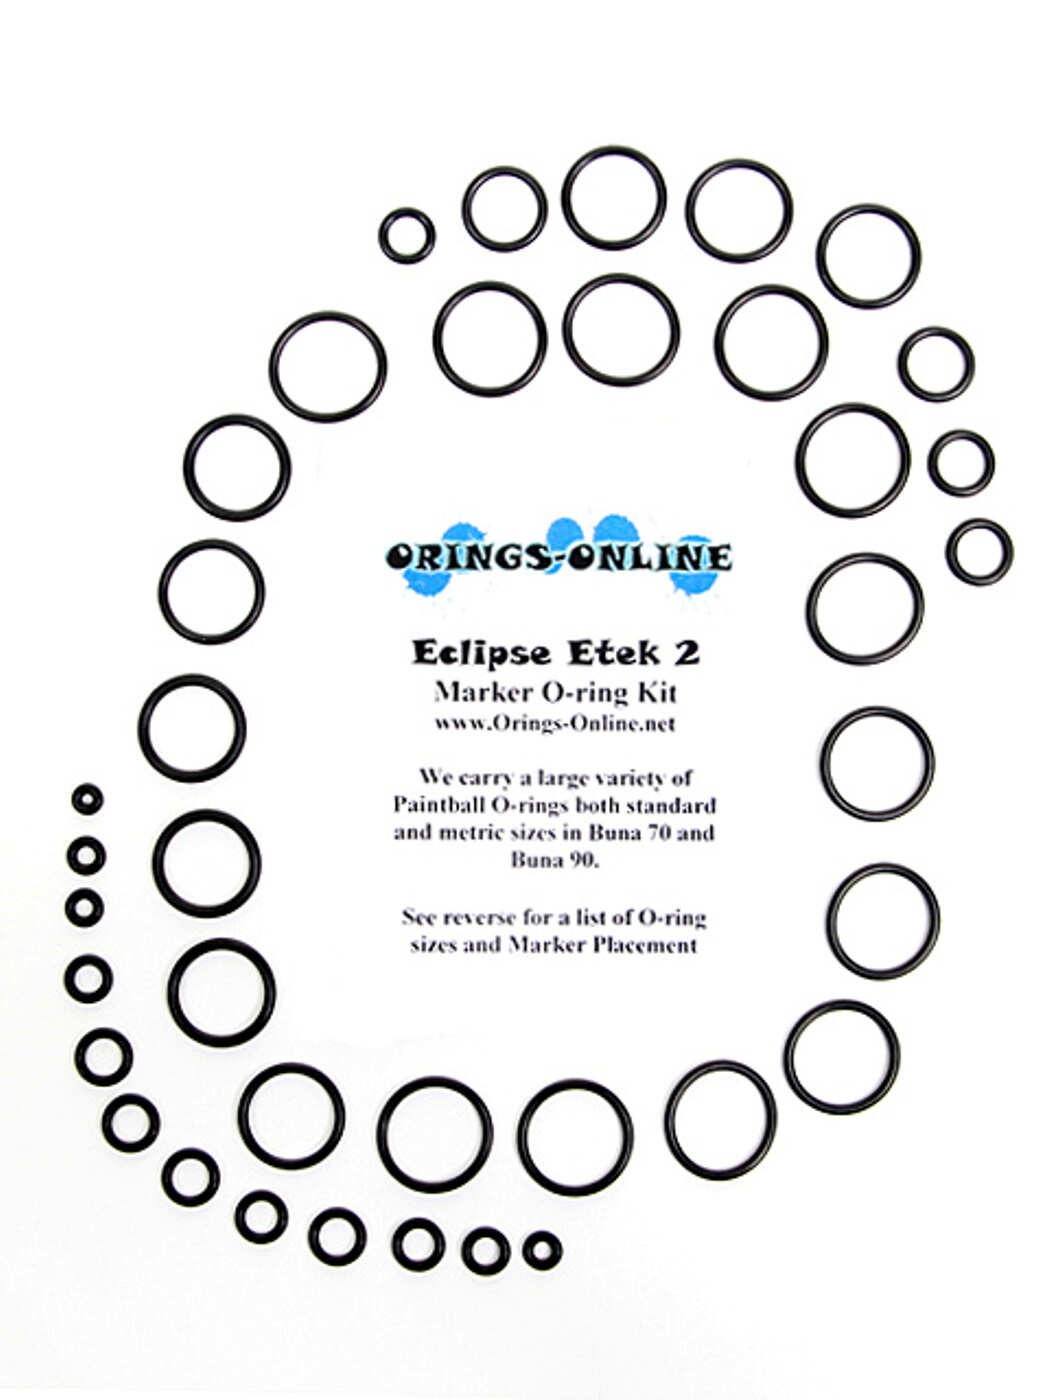 Planet Eclipse Ego Etek 2 Marker O-ring Kit